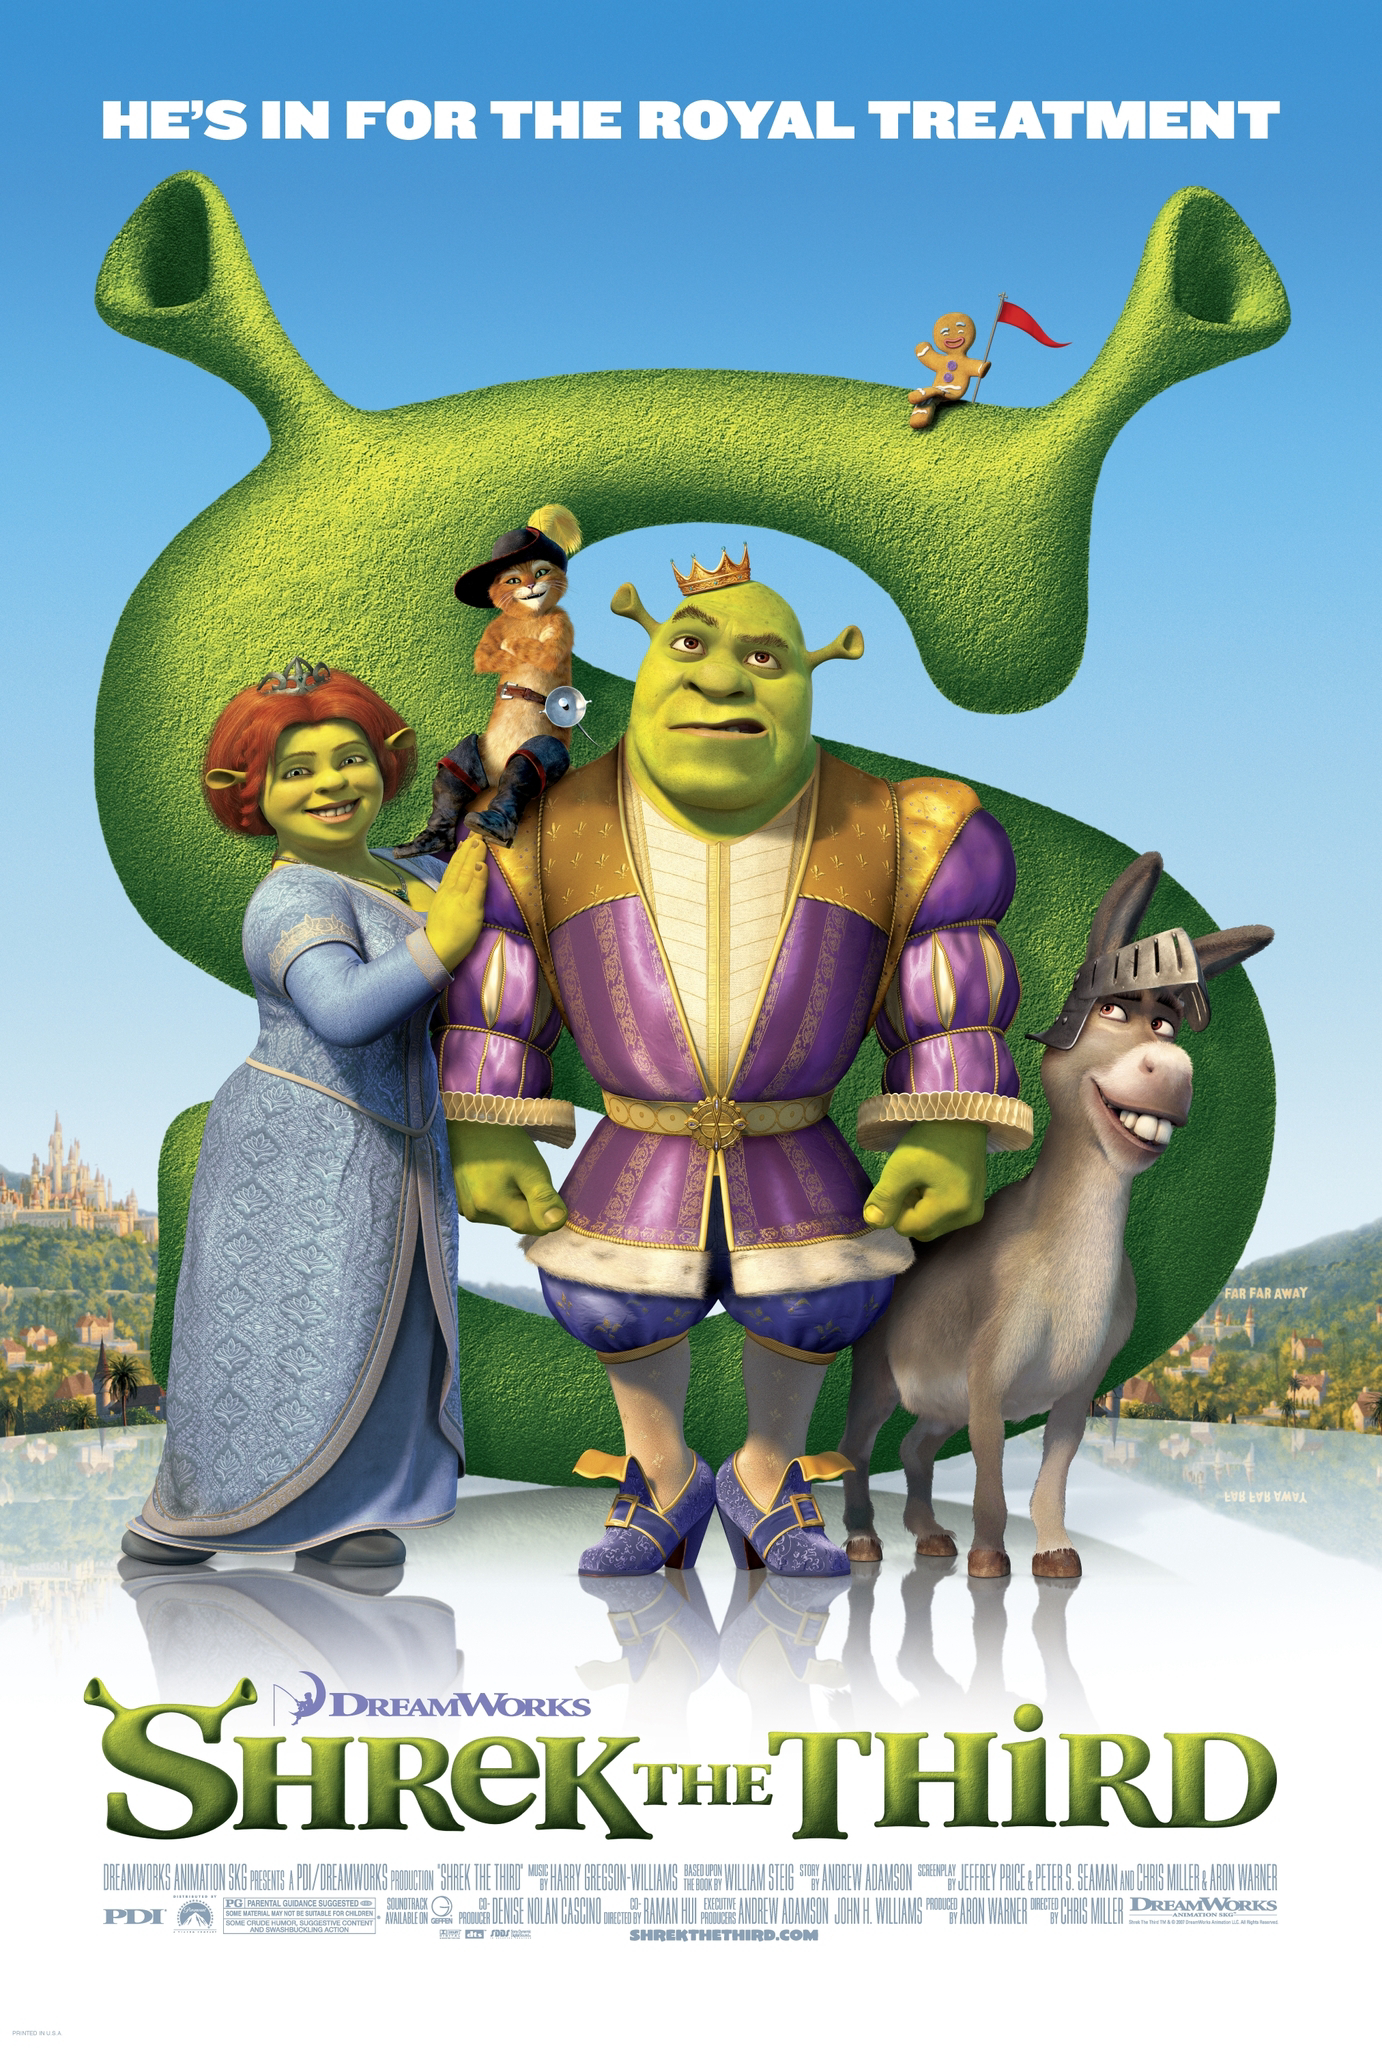 Shrek 3 - Shrek the Third